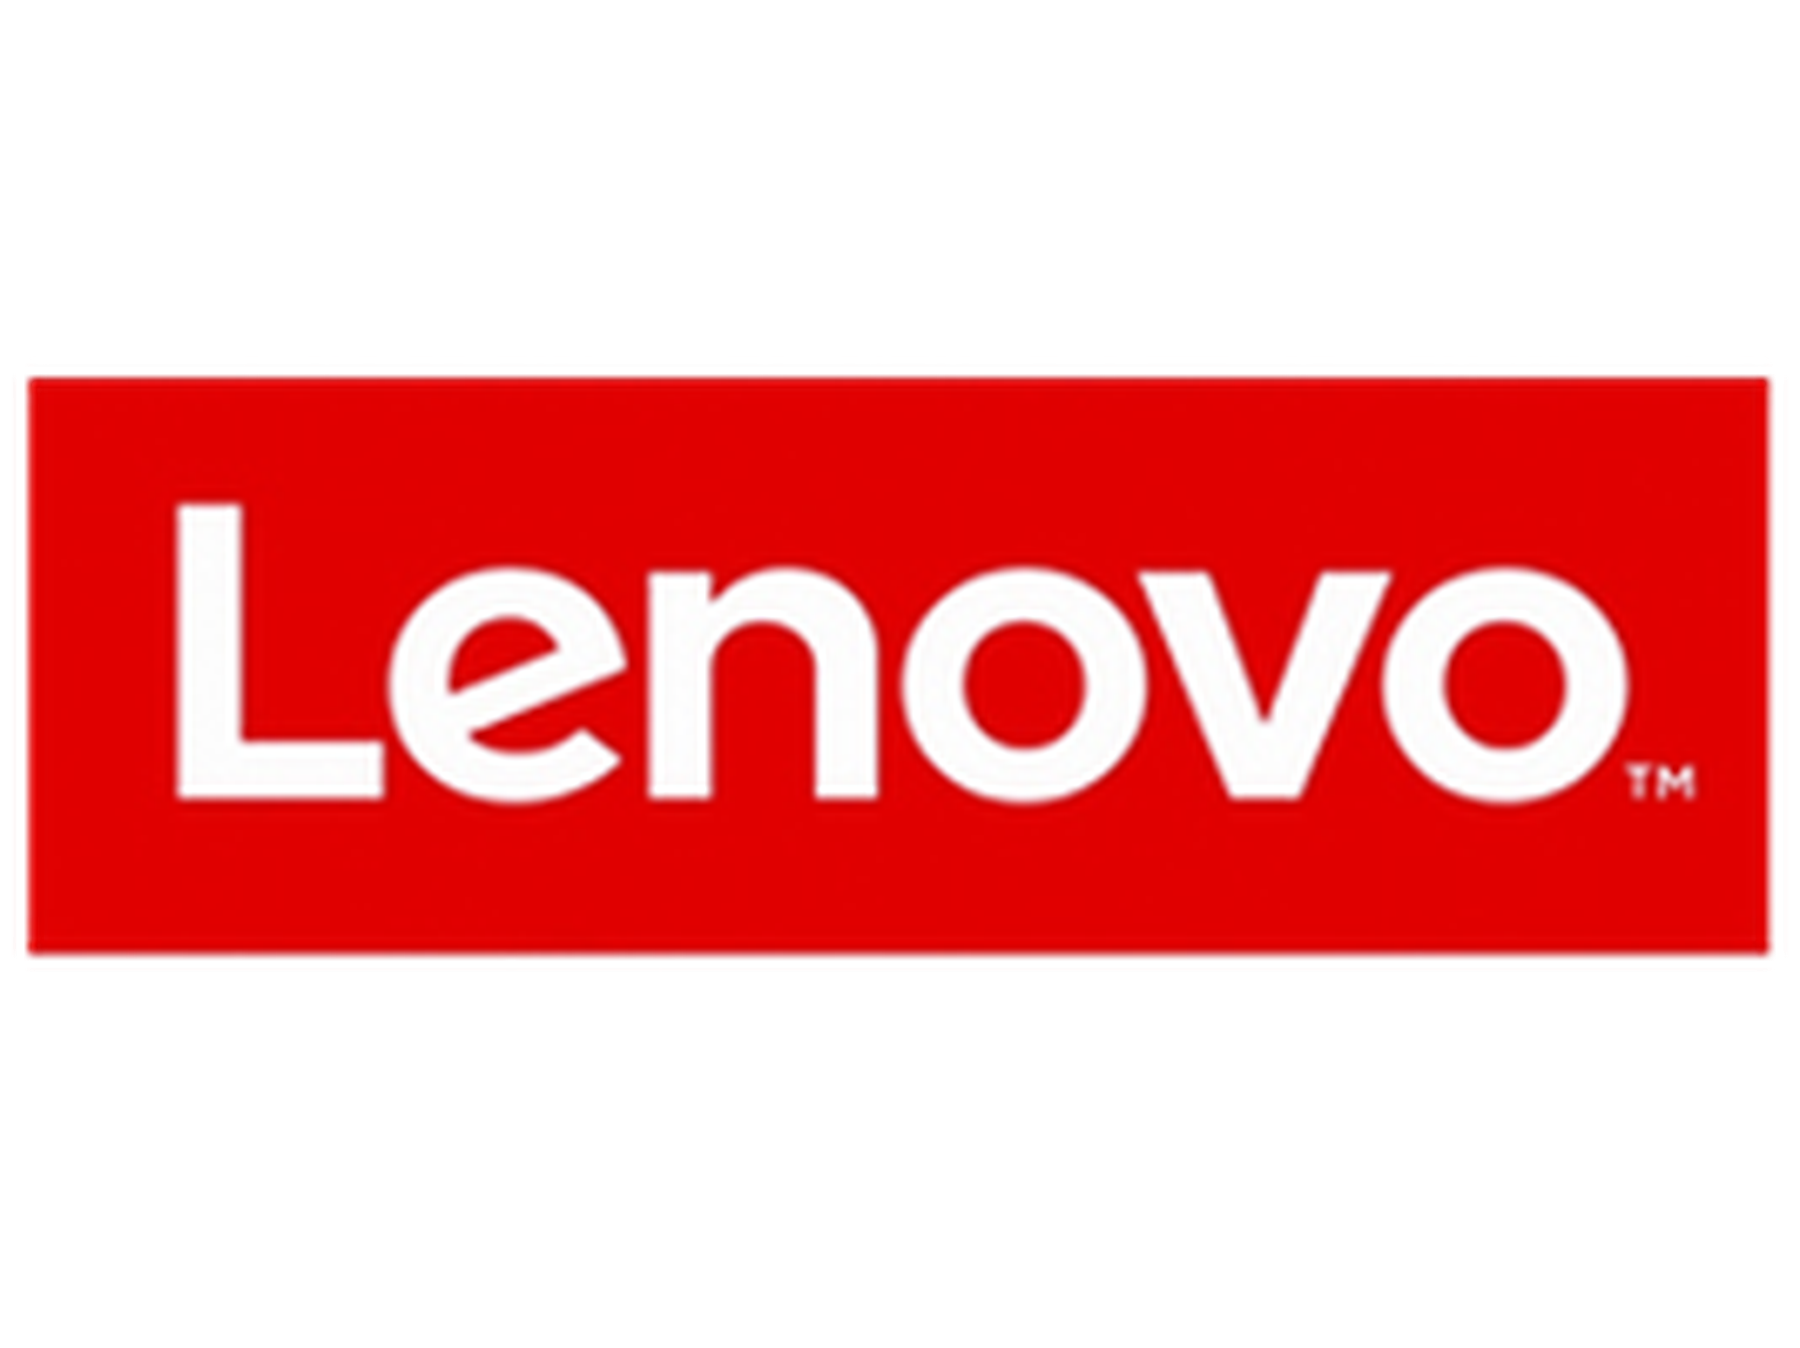 Lenovo Coupon